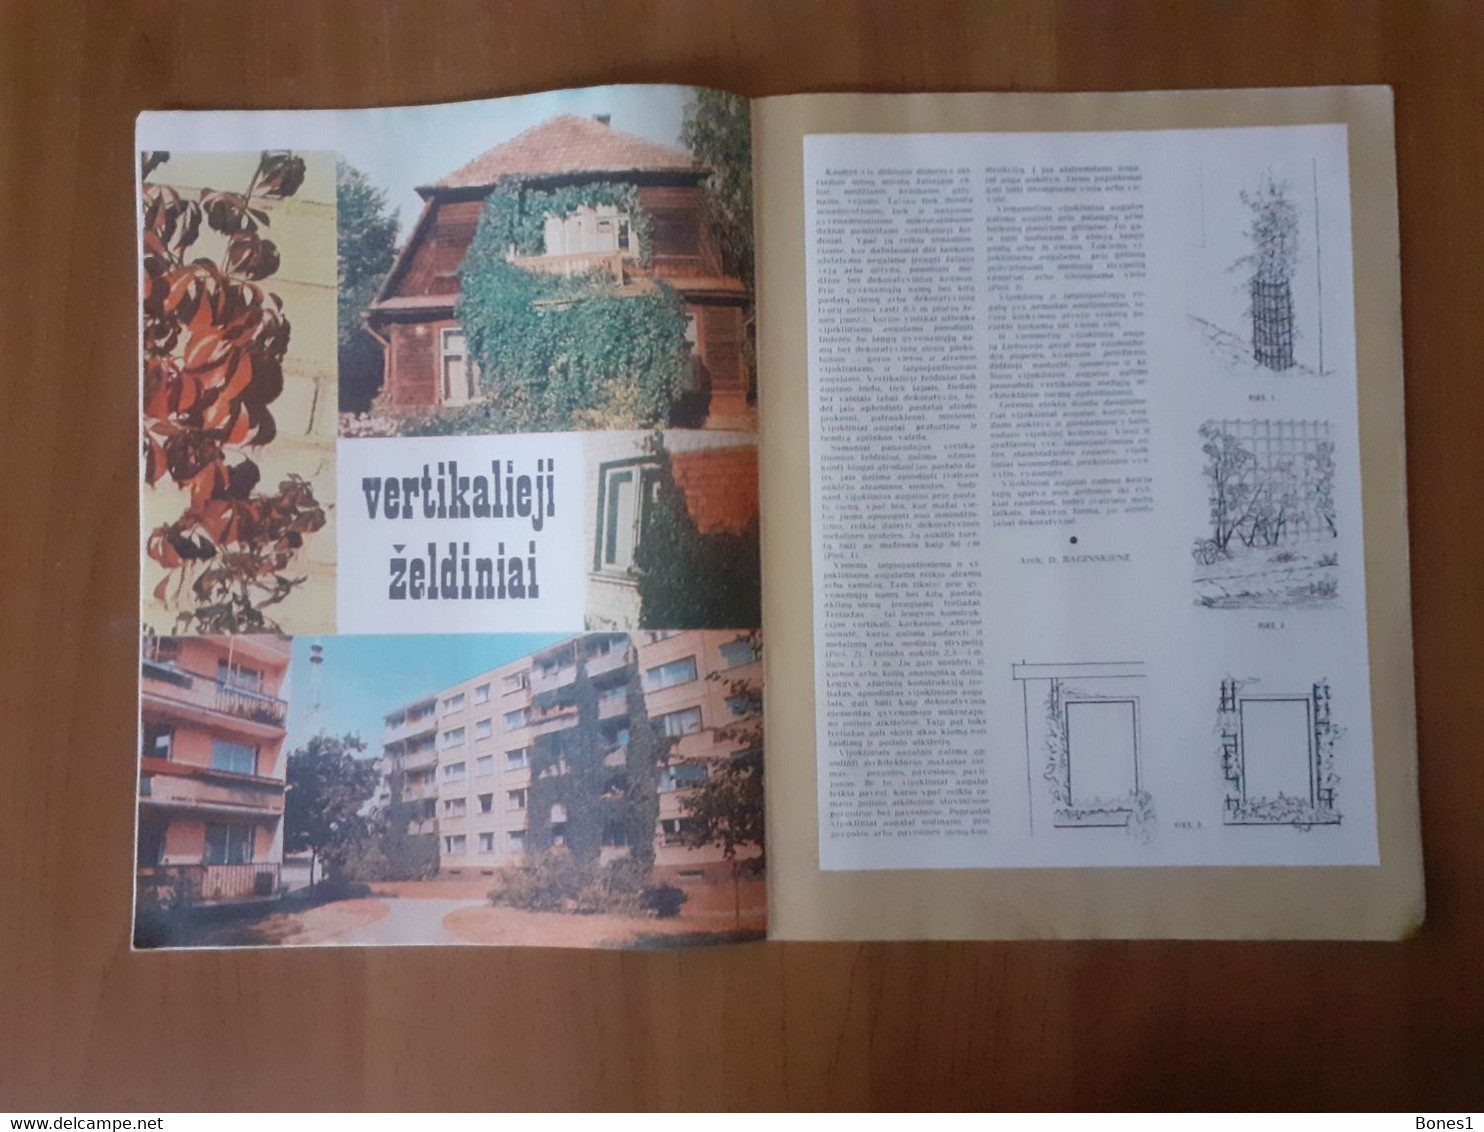 Lithuania magazine Garden 1974